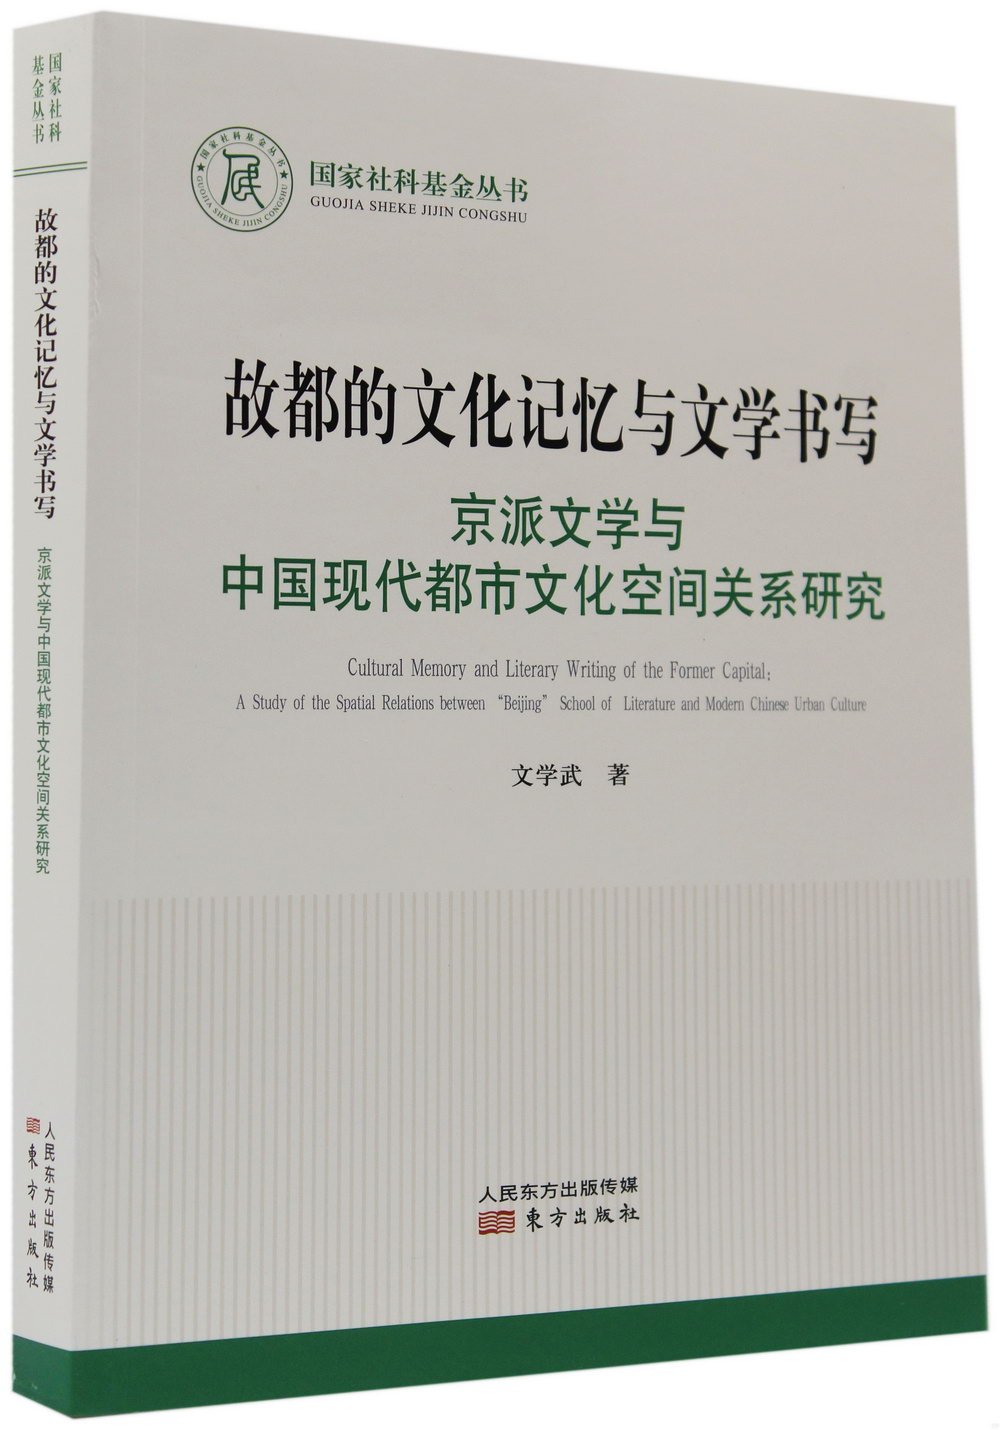 故都的文化記憶與文學書寫：京派文學與中國現代都市文化空間關係研究